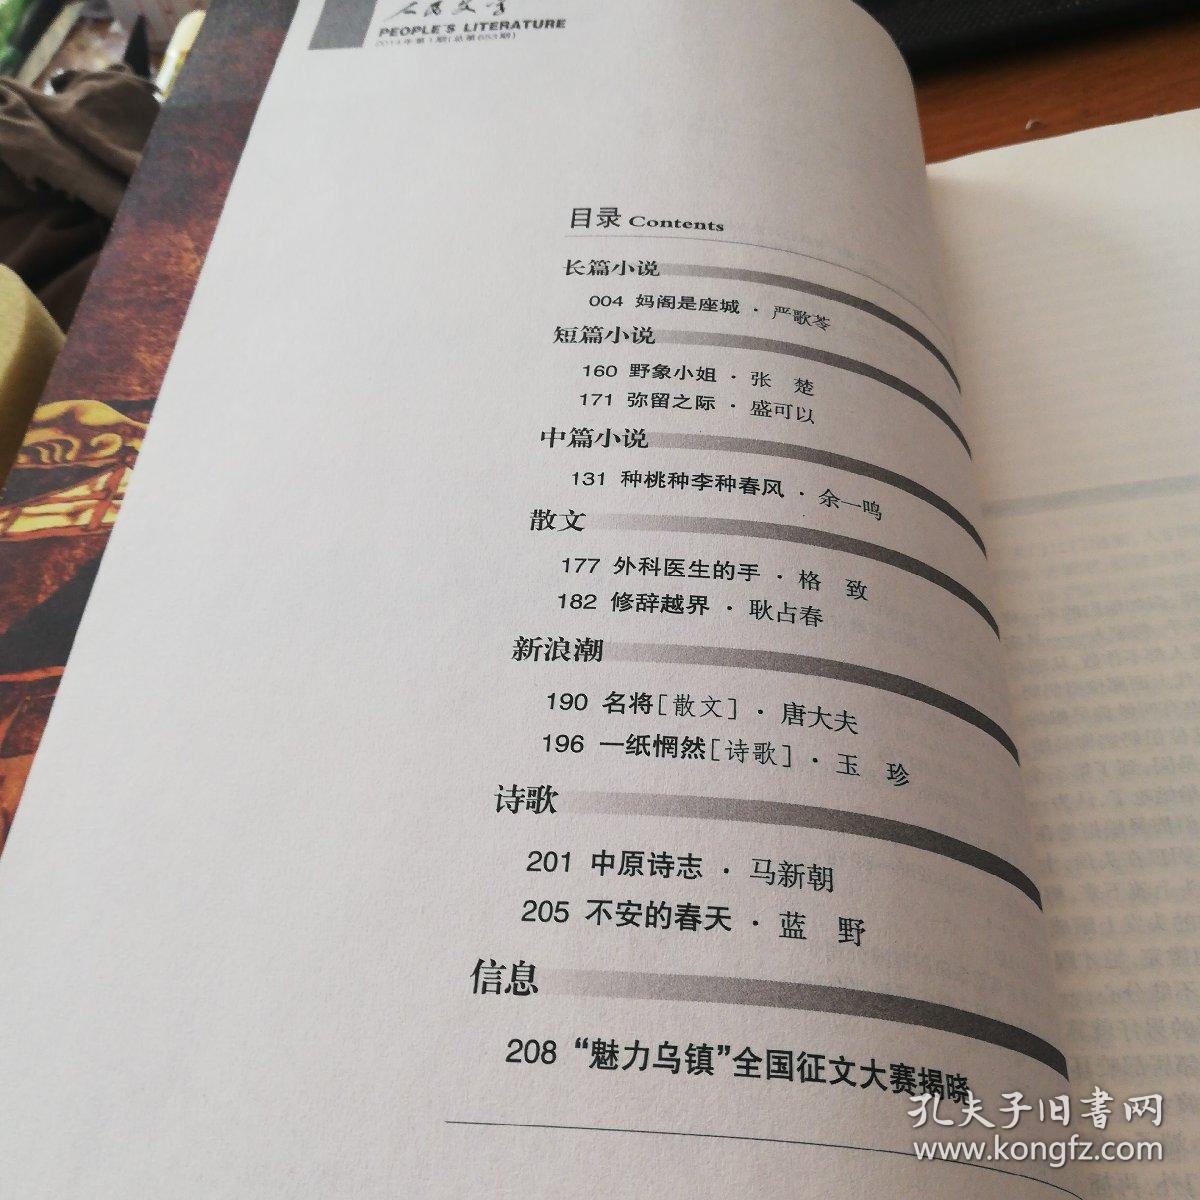 《人民文学》（2014.1）
本期刊登严歌苓长篇小说《妈阁是座城》。